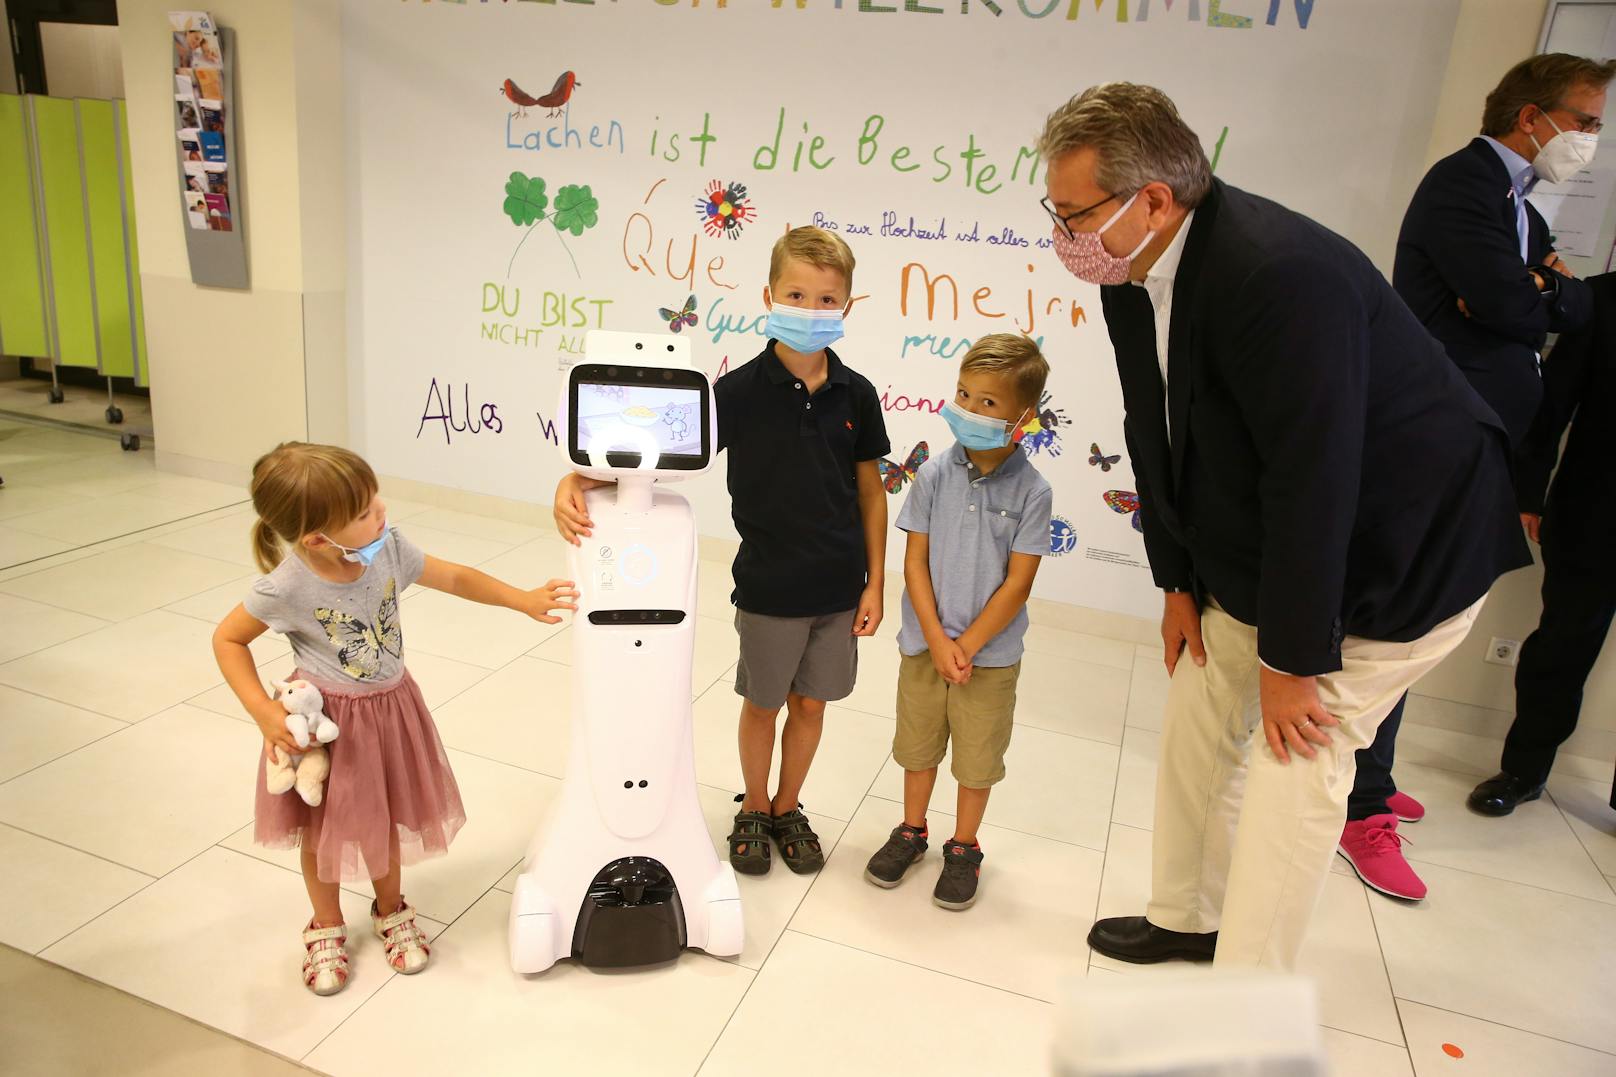 Die Roboter namens "Amy" können Fieber messen und die Kinder unterhalten.